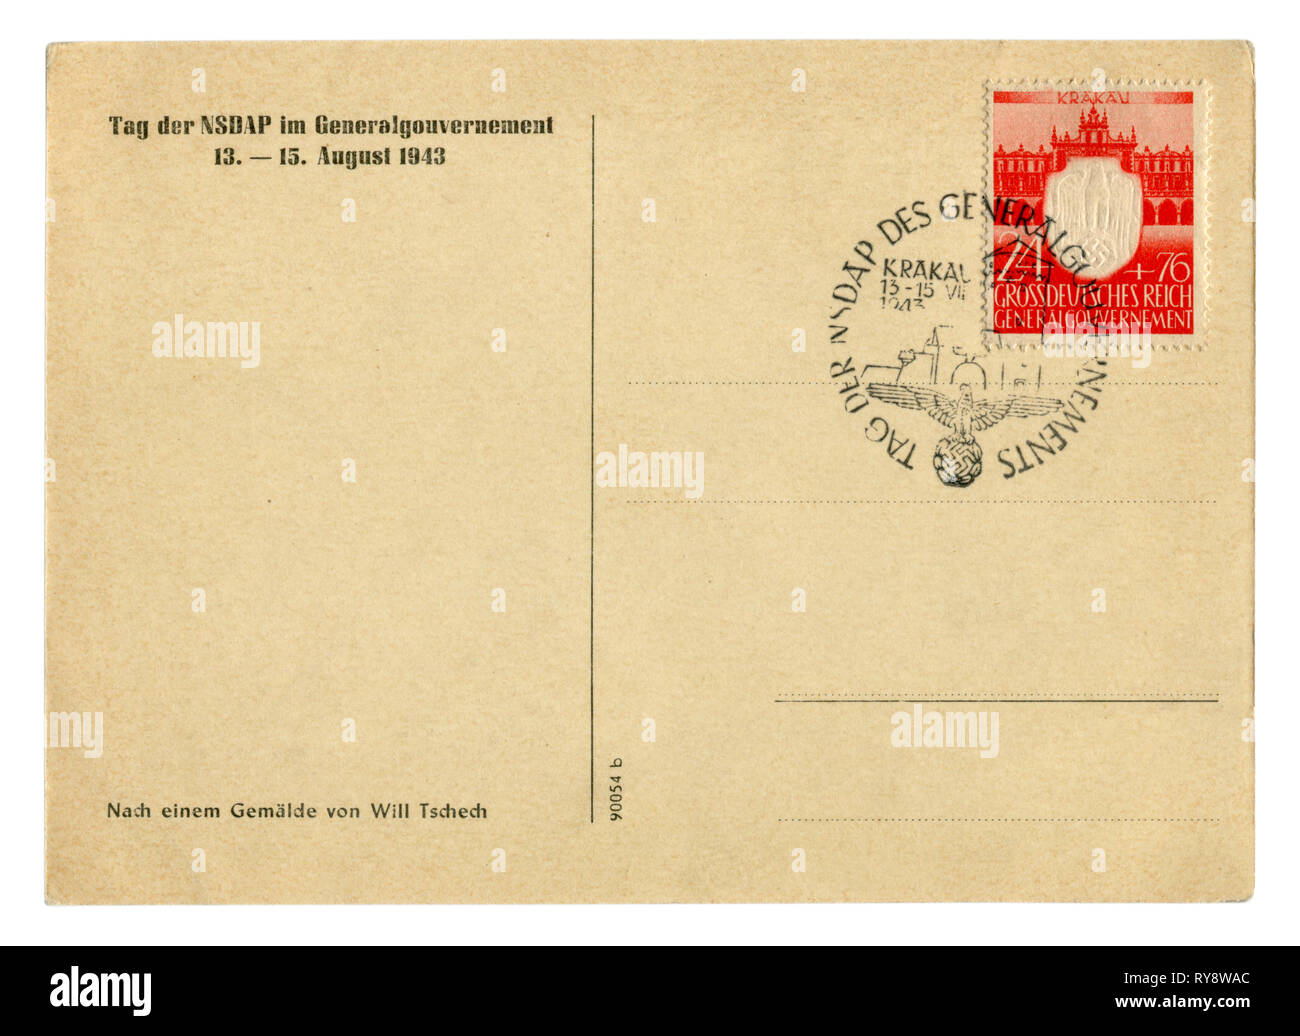 Deutsche Historische Postkarte: Rückseite der Postkarte mit Stempel: Jahrestag der 3 Jahre seit der Gründung der NSDRP Generalgouverneur in Polen Stockfoto